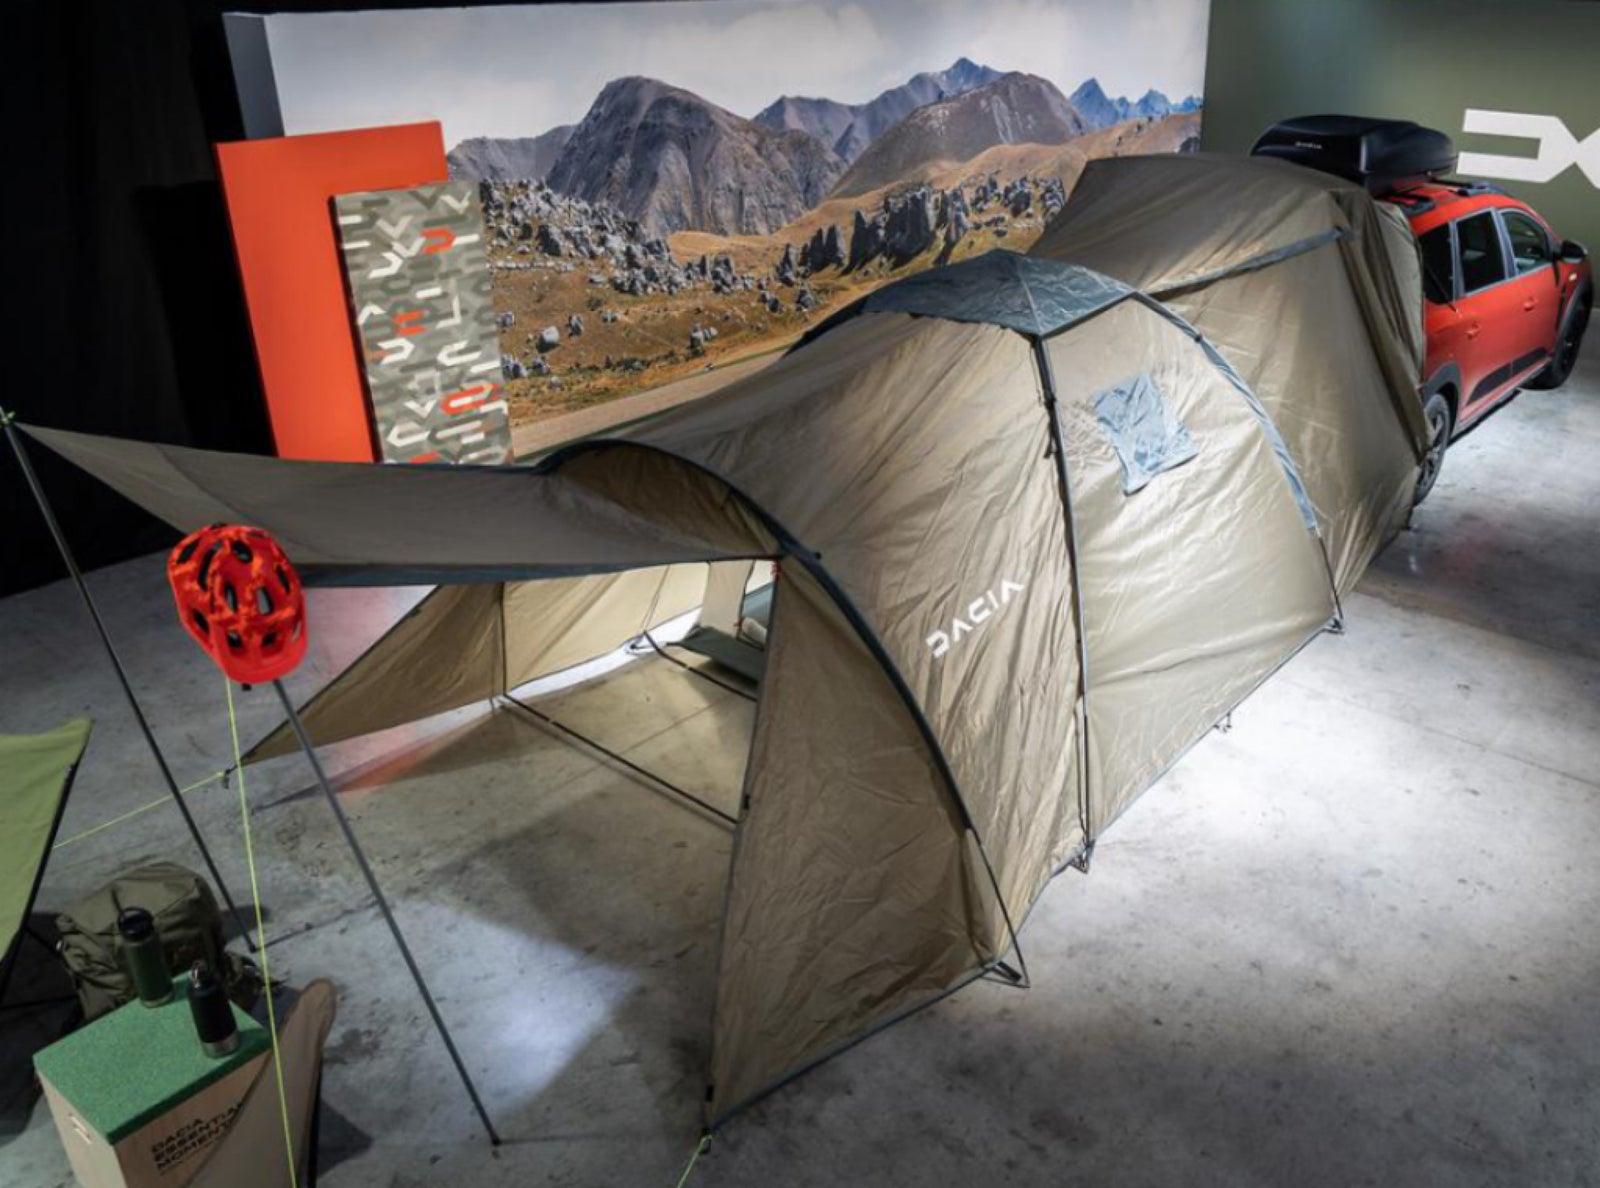 Andet, Dacia Jogger camping kit